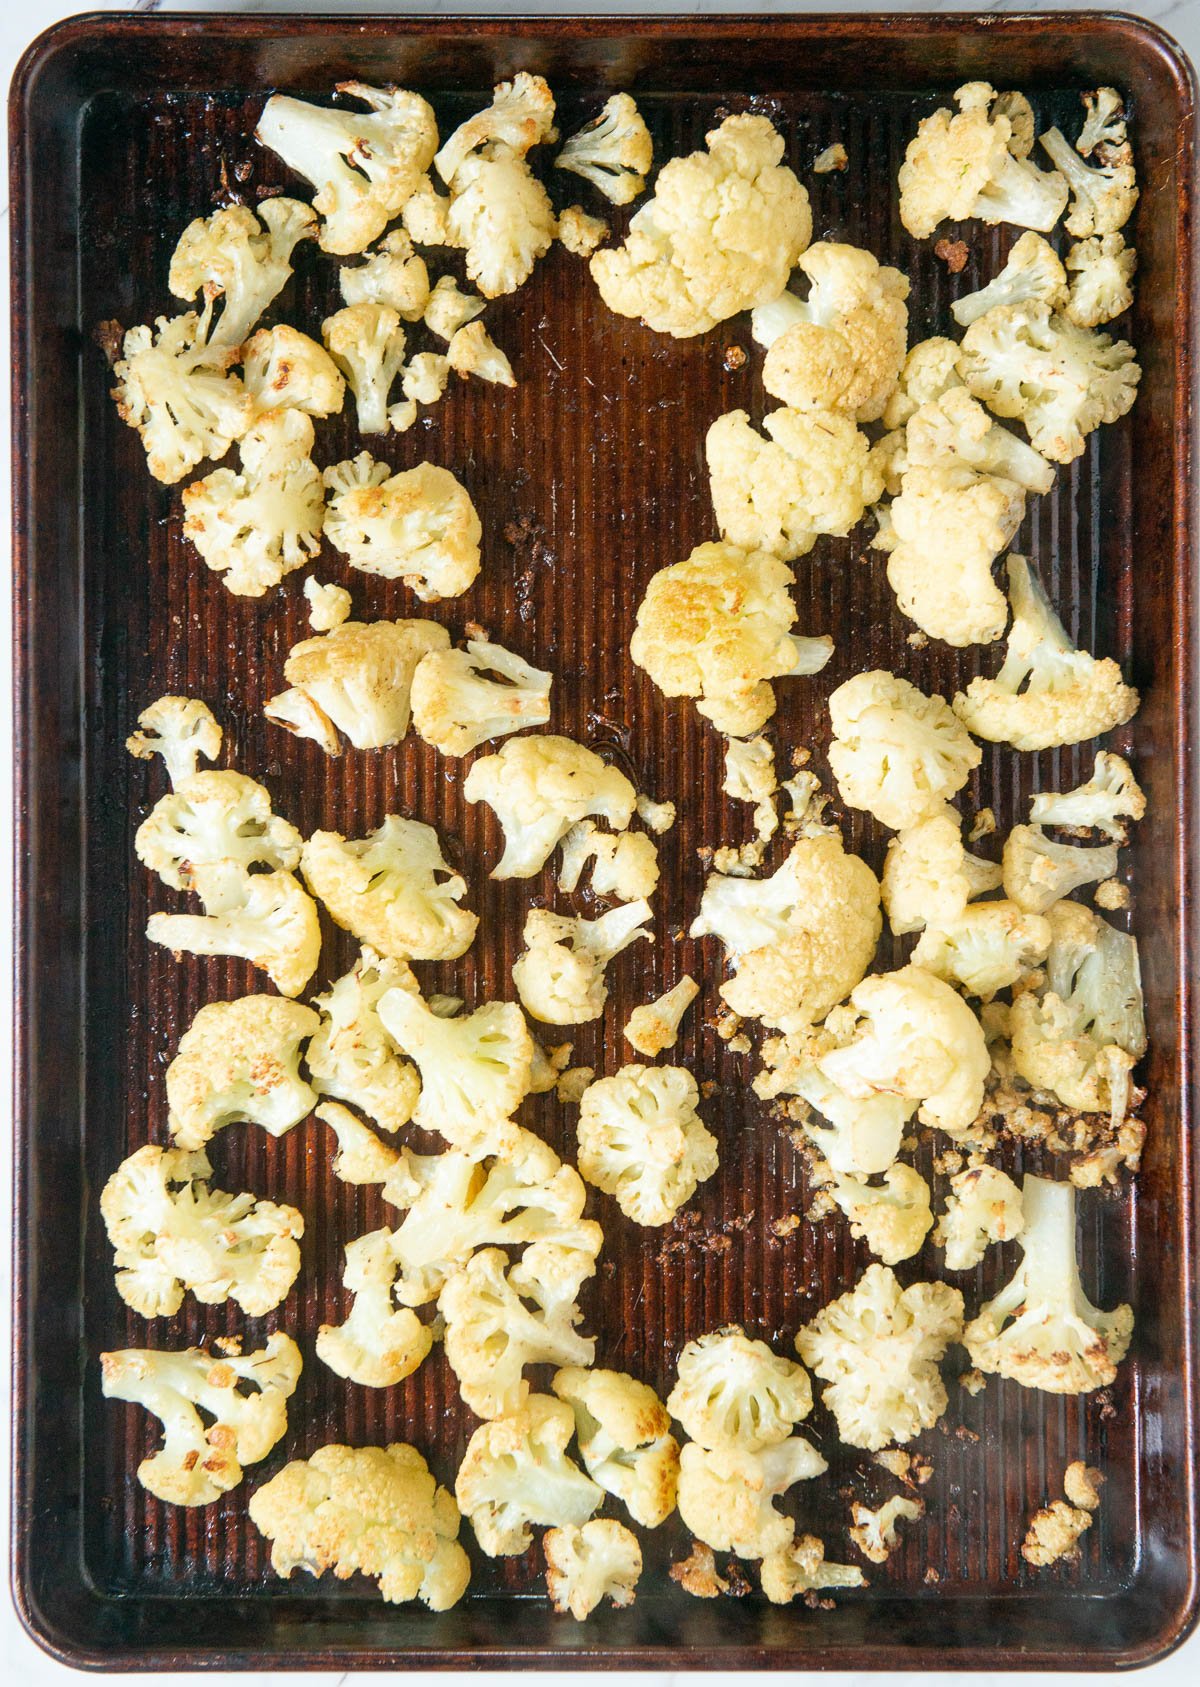 baking sheet with roasted cauliflower florets.